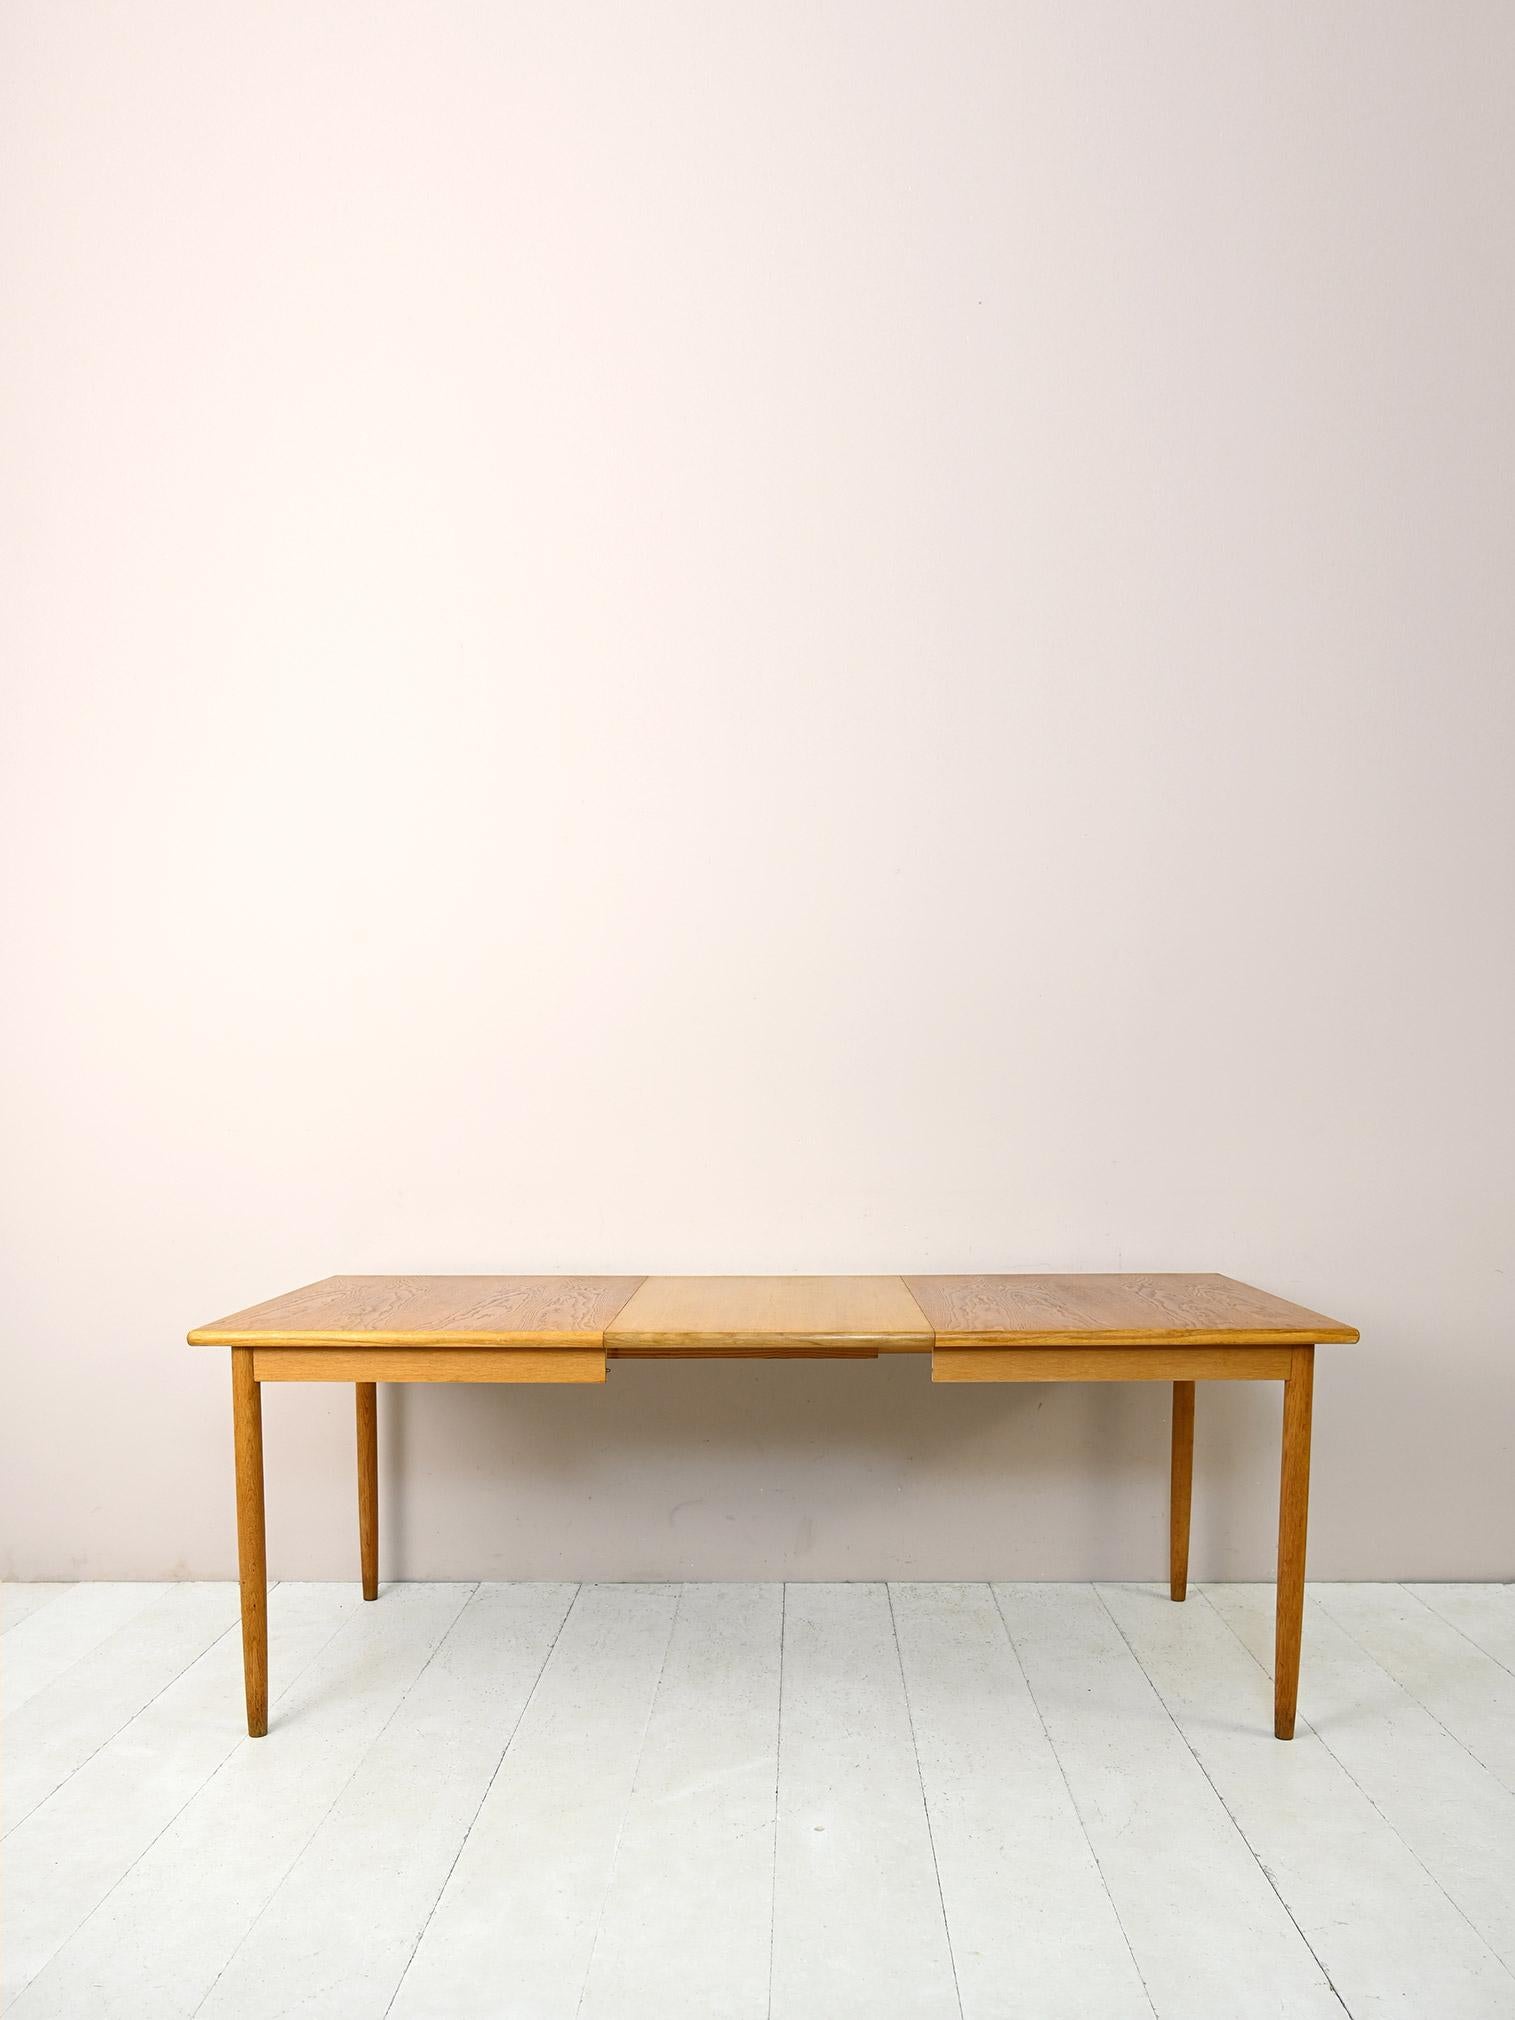 Table vintage des années 1960 avec rallonges centrales.

Ce meuble antique moderne aux formes essentielles et minimalistes se compose d'un grand plateau rectangulaire aux angles arrondis et de longs pieds coniques.
Grâce à la possibilité d'être